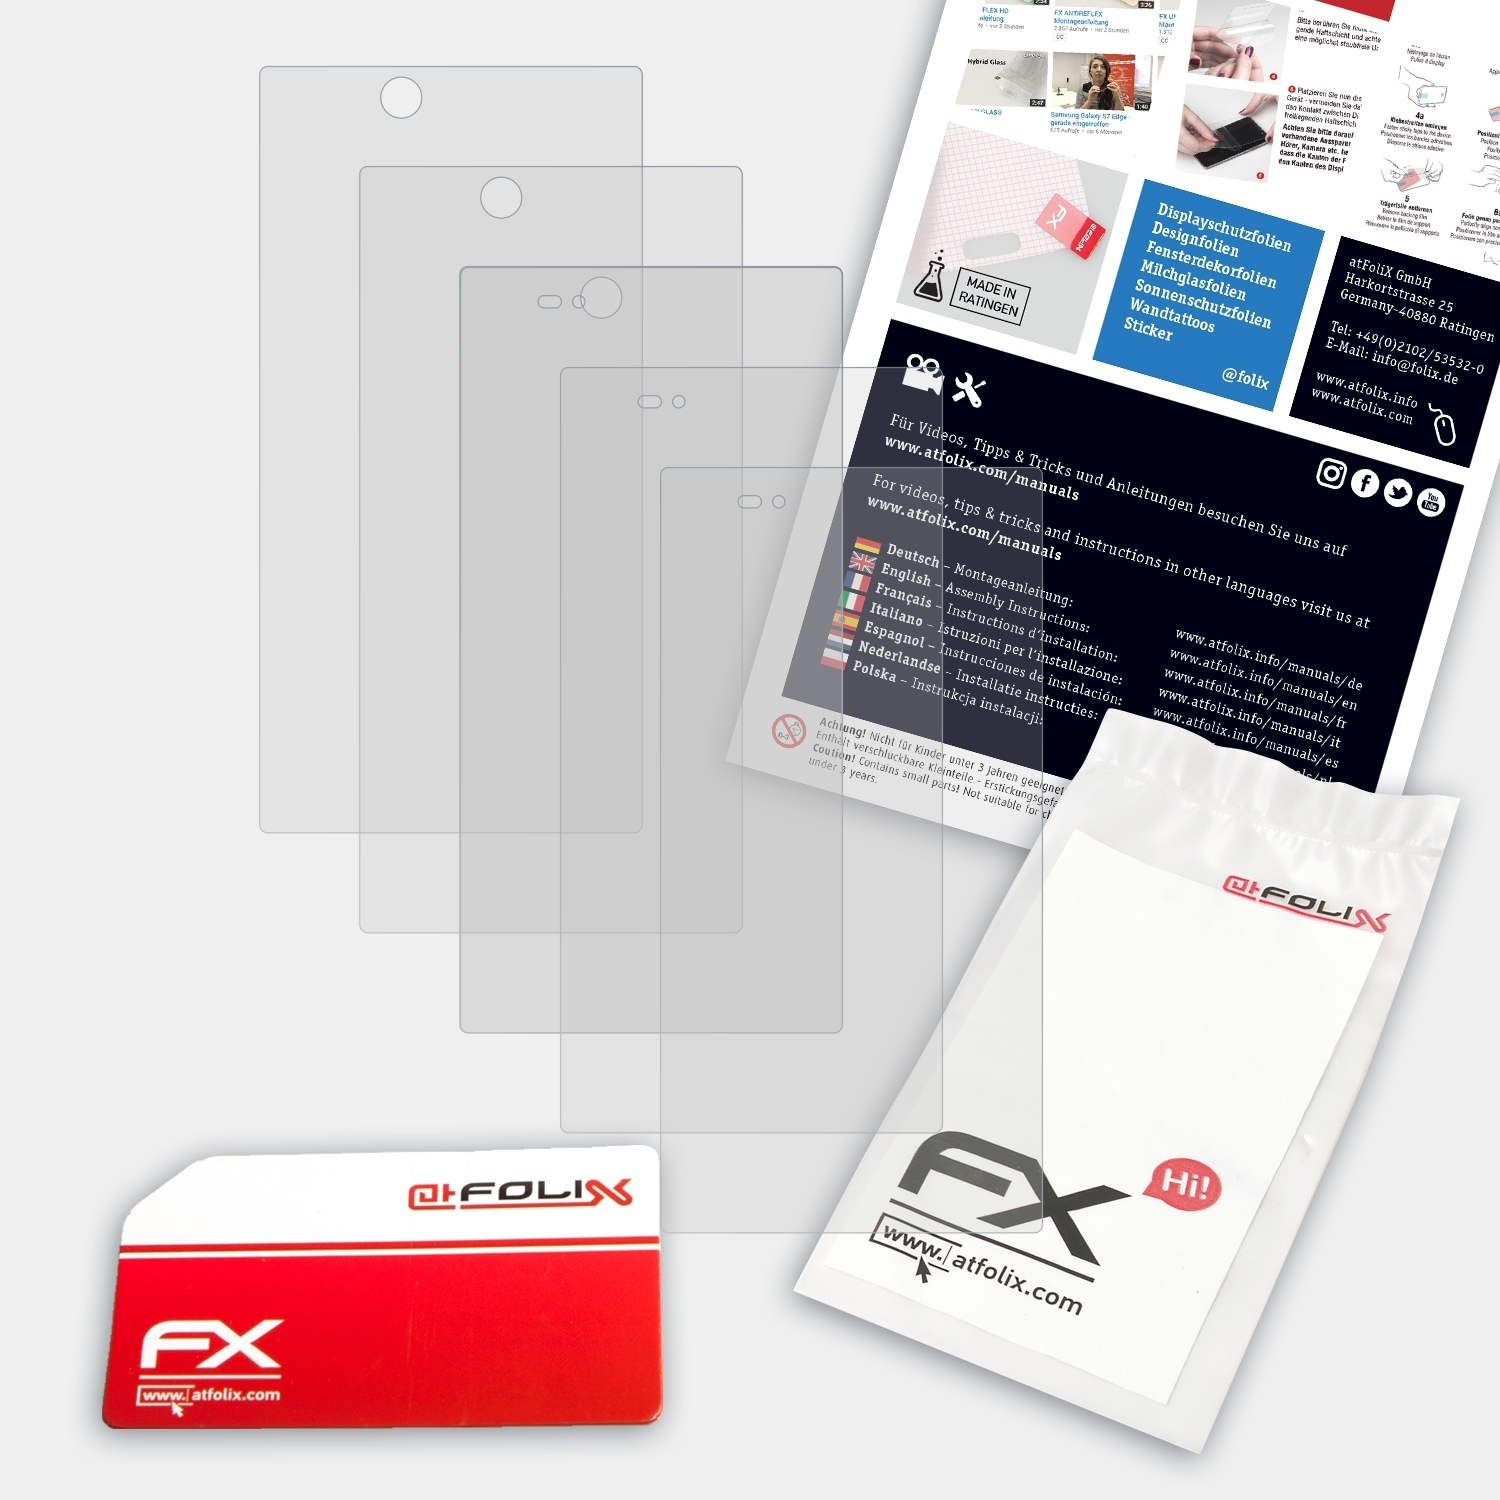 Z Xperia FX-Antireflex Sony Displayschutz(für 3x ATFOLIX Ultra)